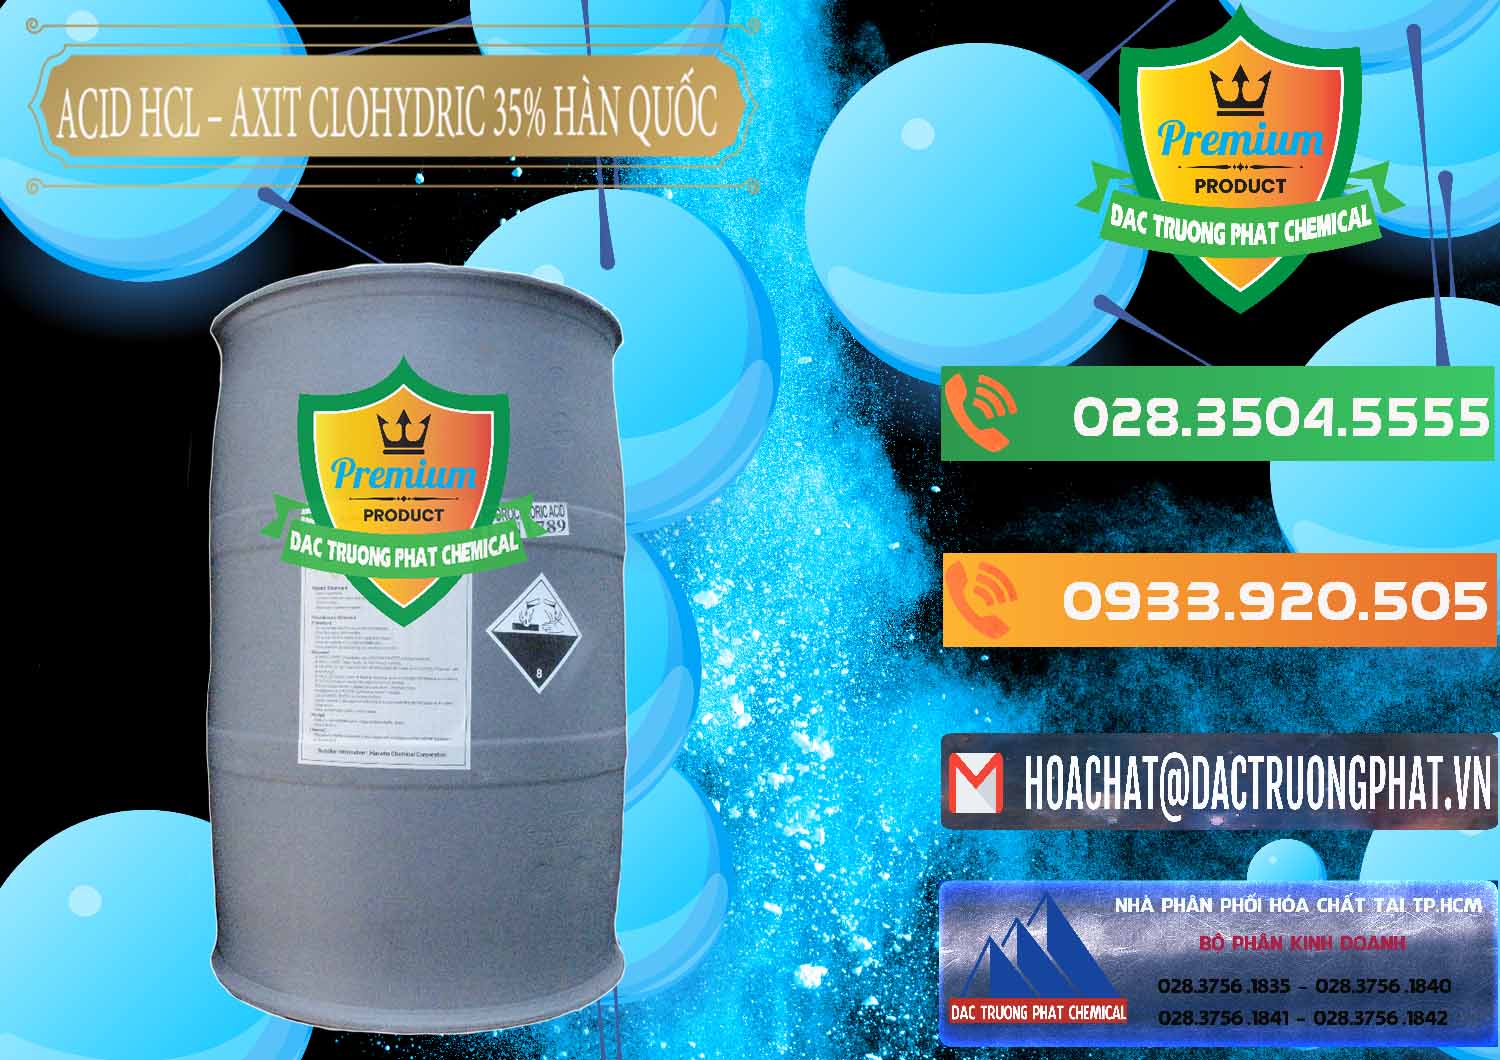 Nơi chuyên bán & cung cấp Acid HCL - Axit Cohidric 35% Hàn Quốc Korea - 0011 - Đơn vị kinh doanh và phân phối hóa chất tại TP.HCM - hoachatxulynuoc.com.vn